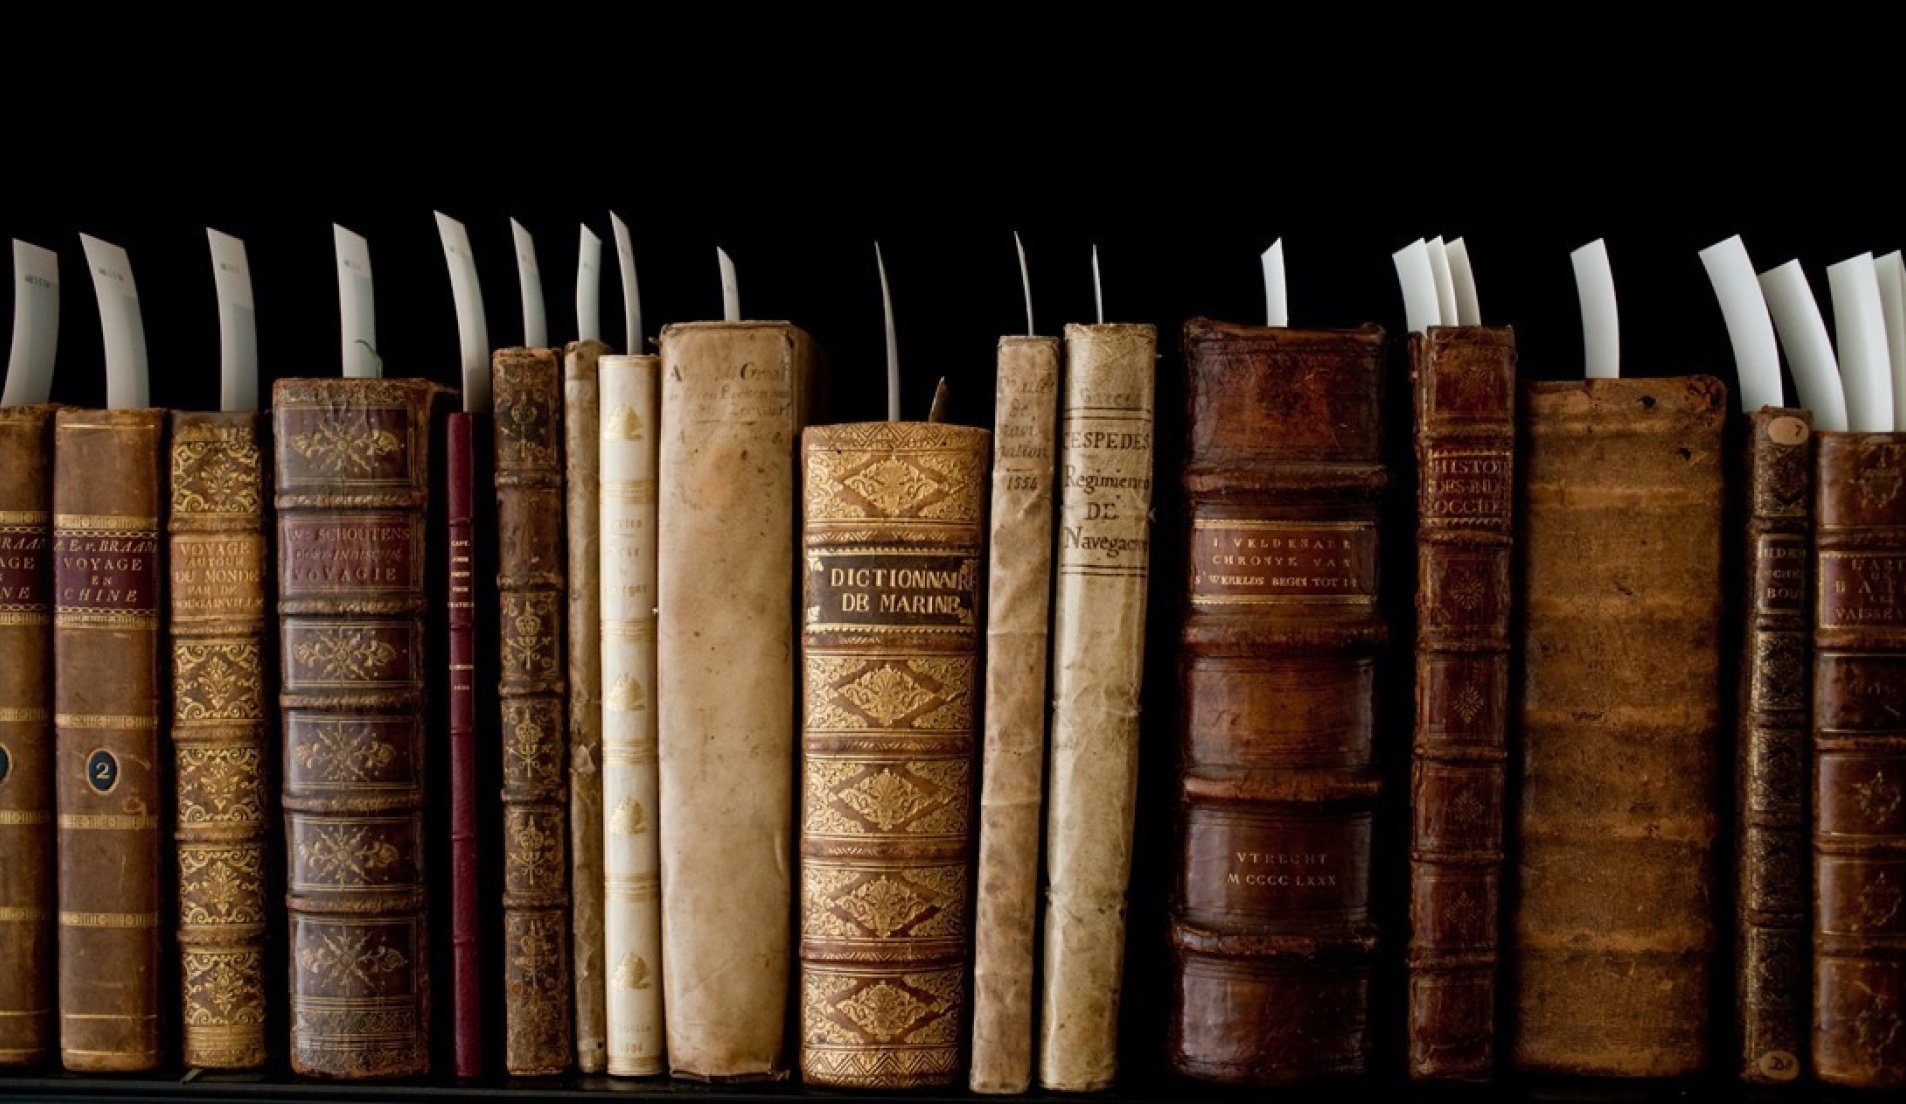 Boekenkast vol boeken met notitie's voor belangrijke passages in het boek.